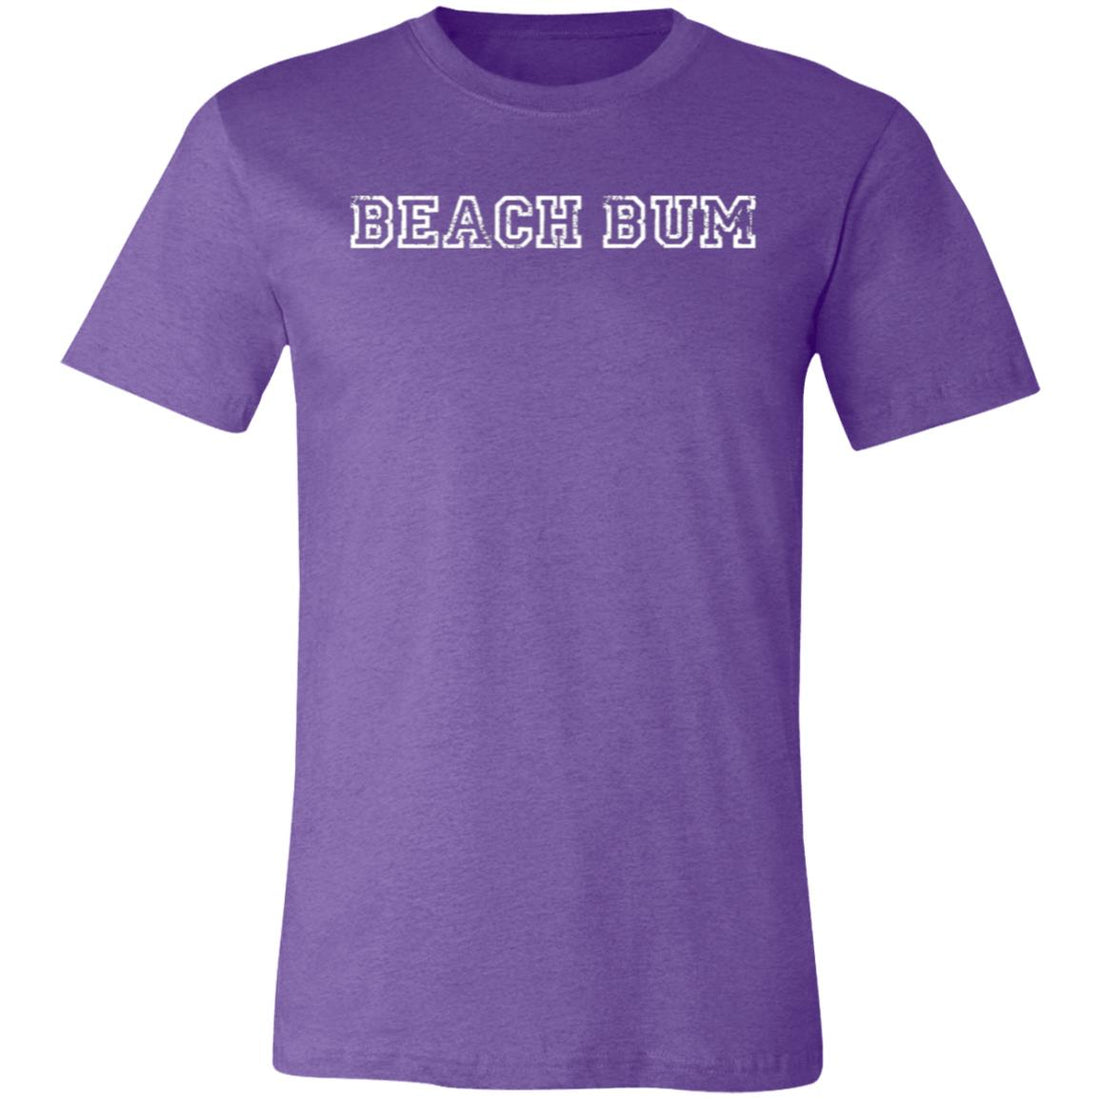 Beach Bum T-Shirt - T-Shirts - Positively Sassy - Beach Bum T-Shirt